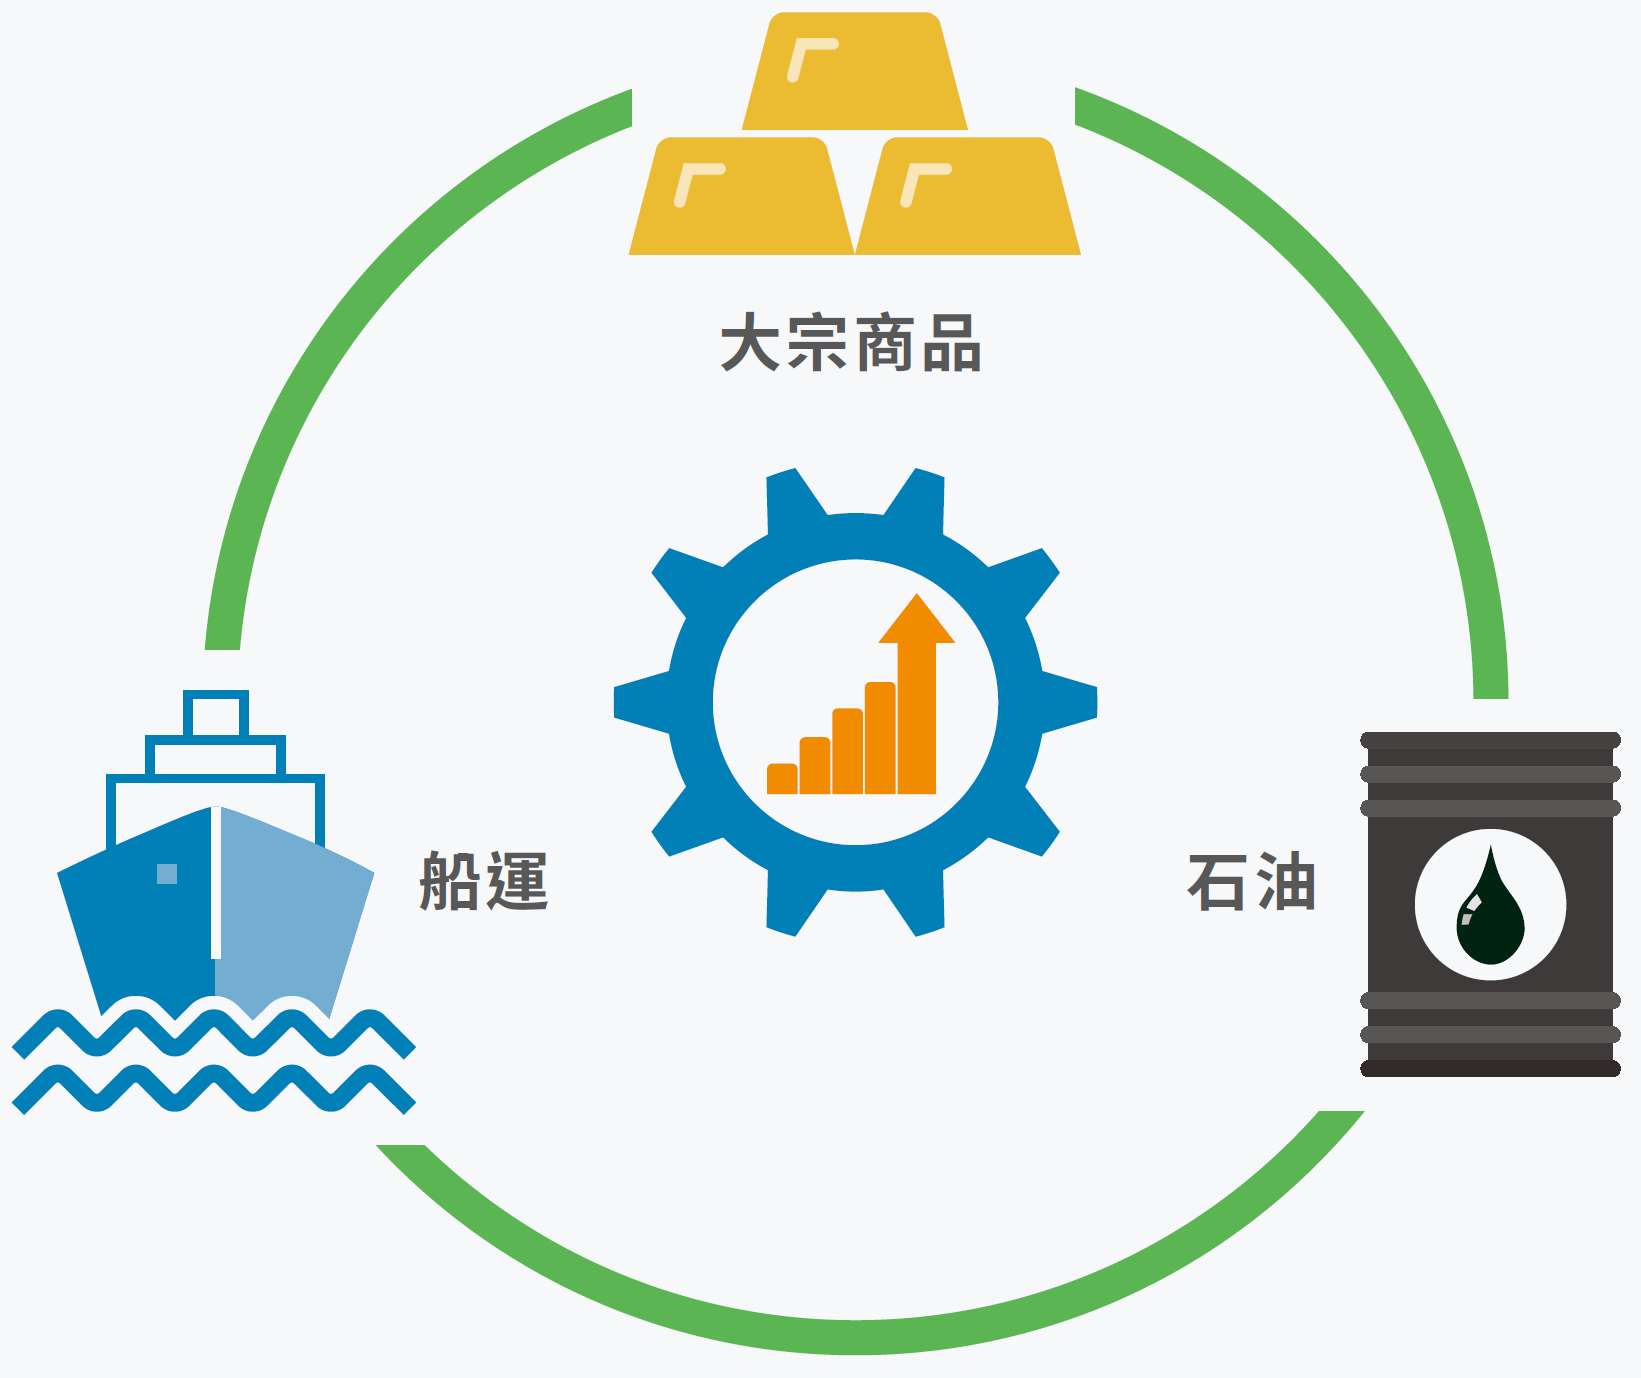 中國新能源陸續取替傳統能源應用